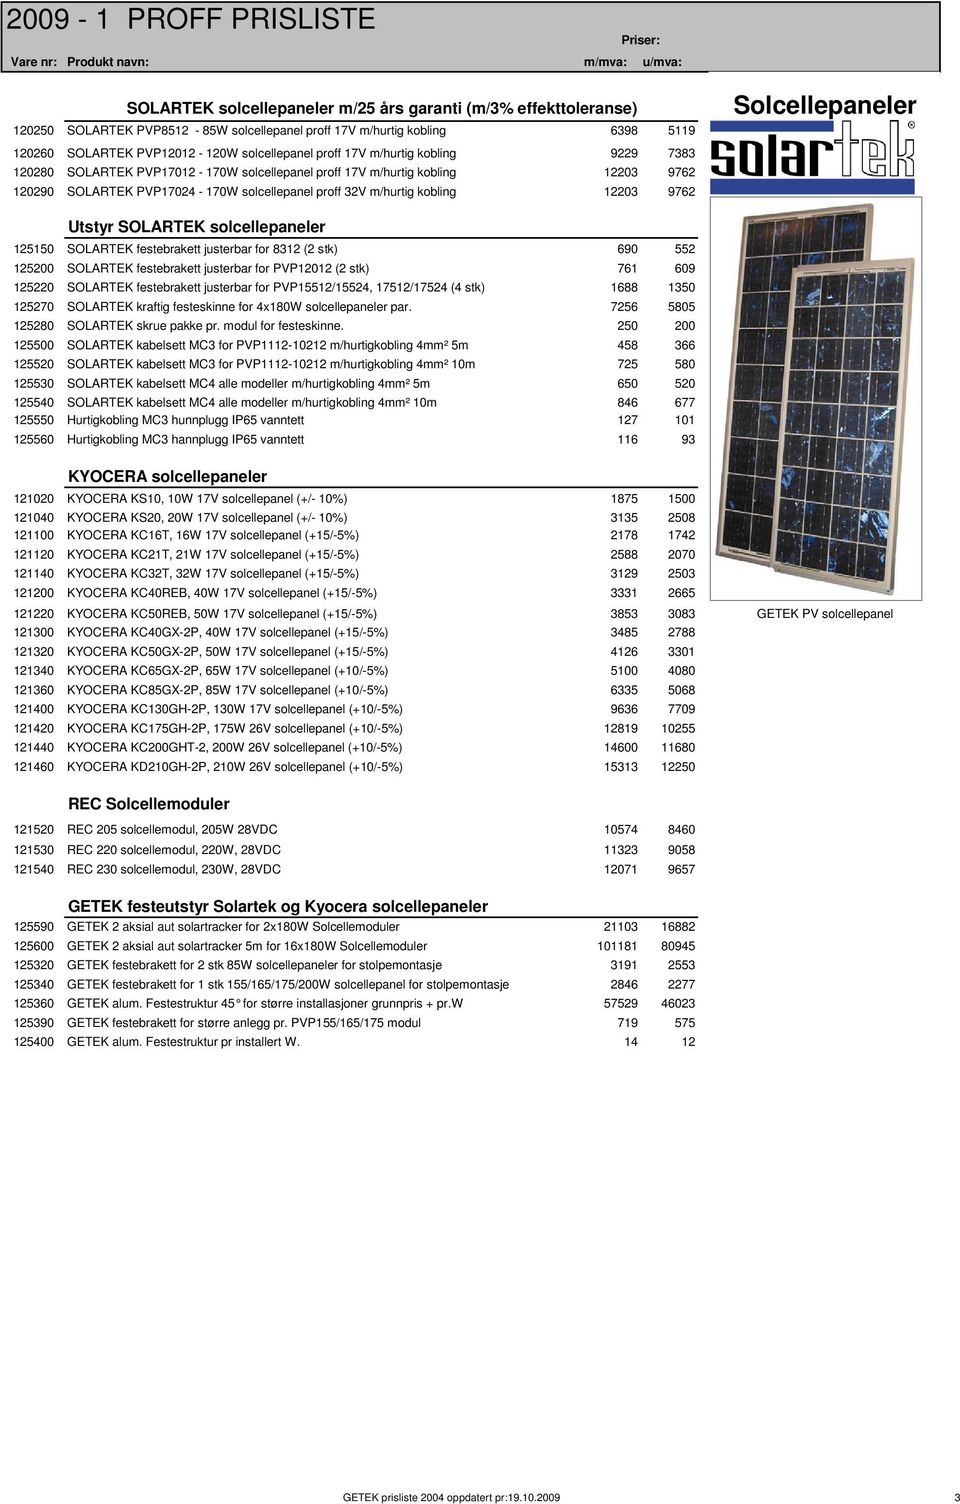 Solcellepaneler Utstyr SOLARTEK solcellepaneler 125150 SOLARTEK festebrakett justerbar for 8312 (2 stk) 690 552 125200 SOLARTEK festebrakett justerbar for PVP12012 (2 stk) 761 609 125220 SOLARTEK